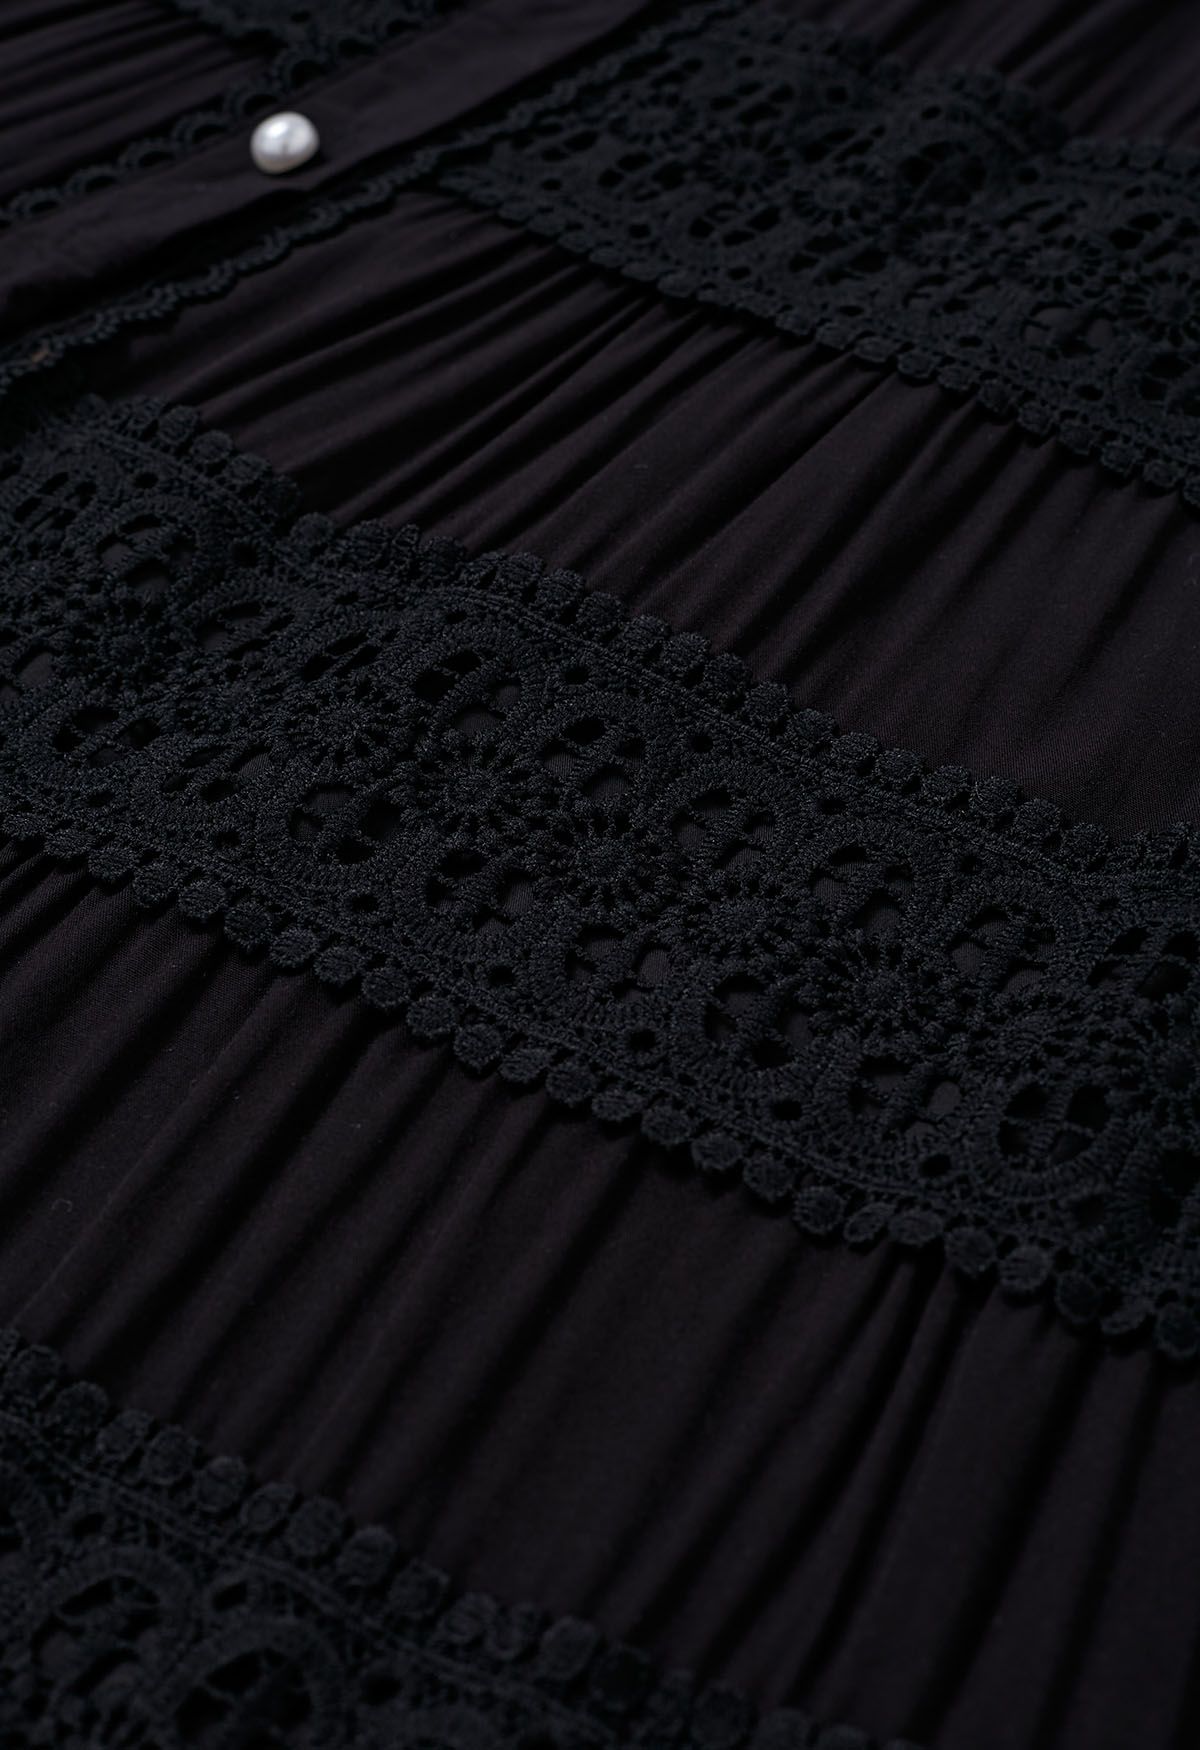 فستان كروشيه بأزرار على الخصر وربطة عنق باللون الأسود